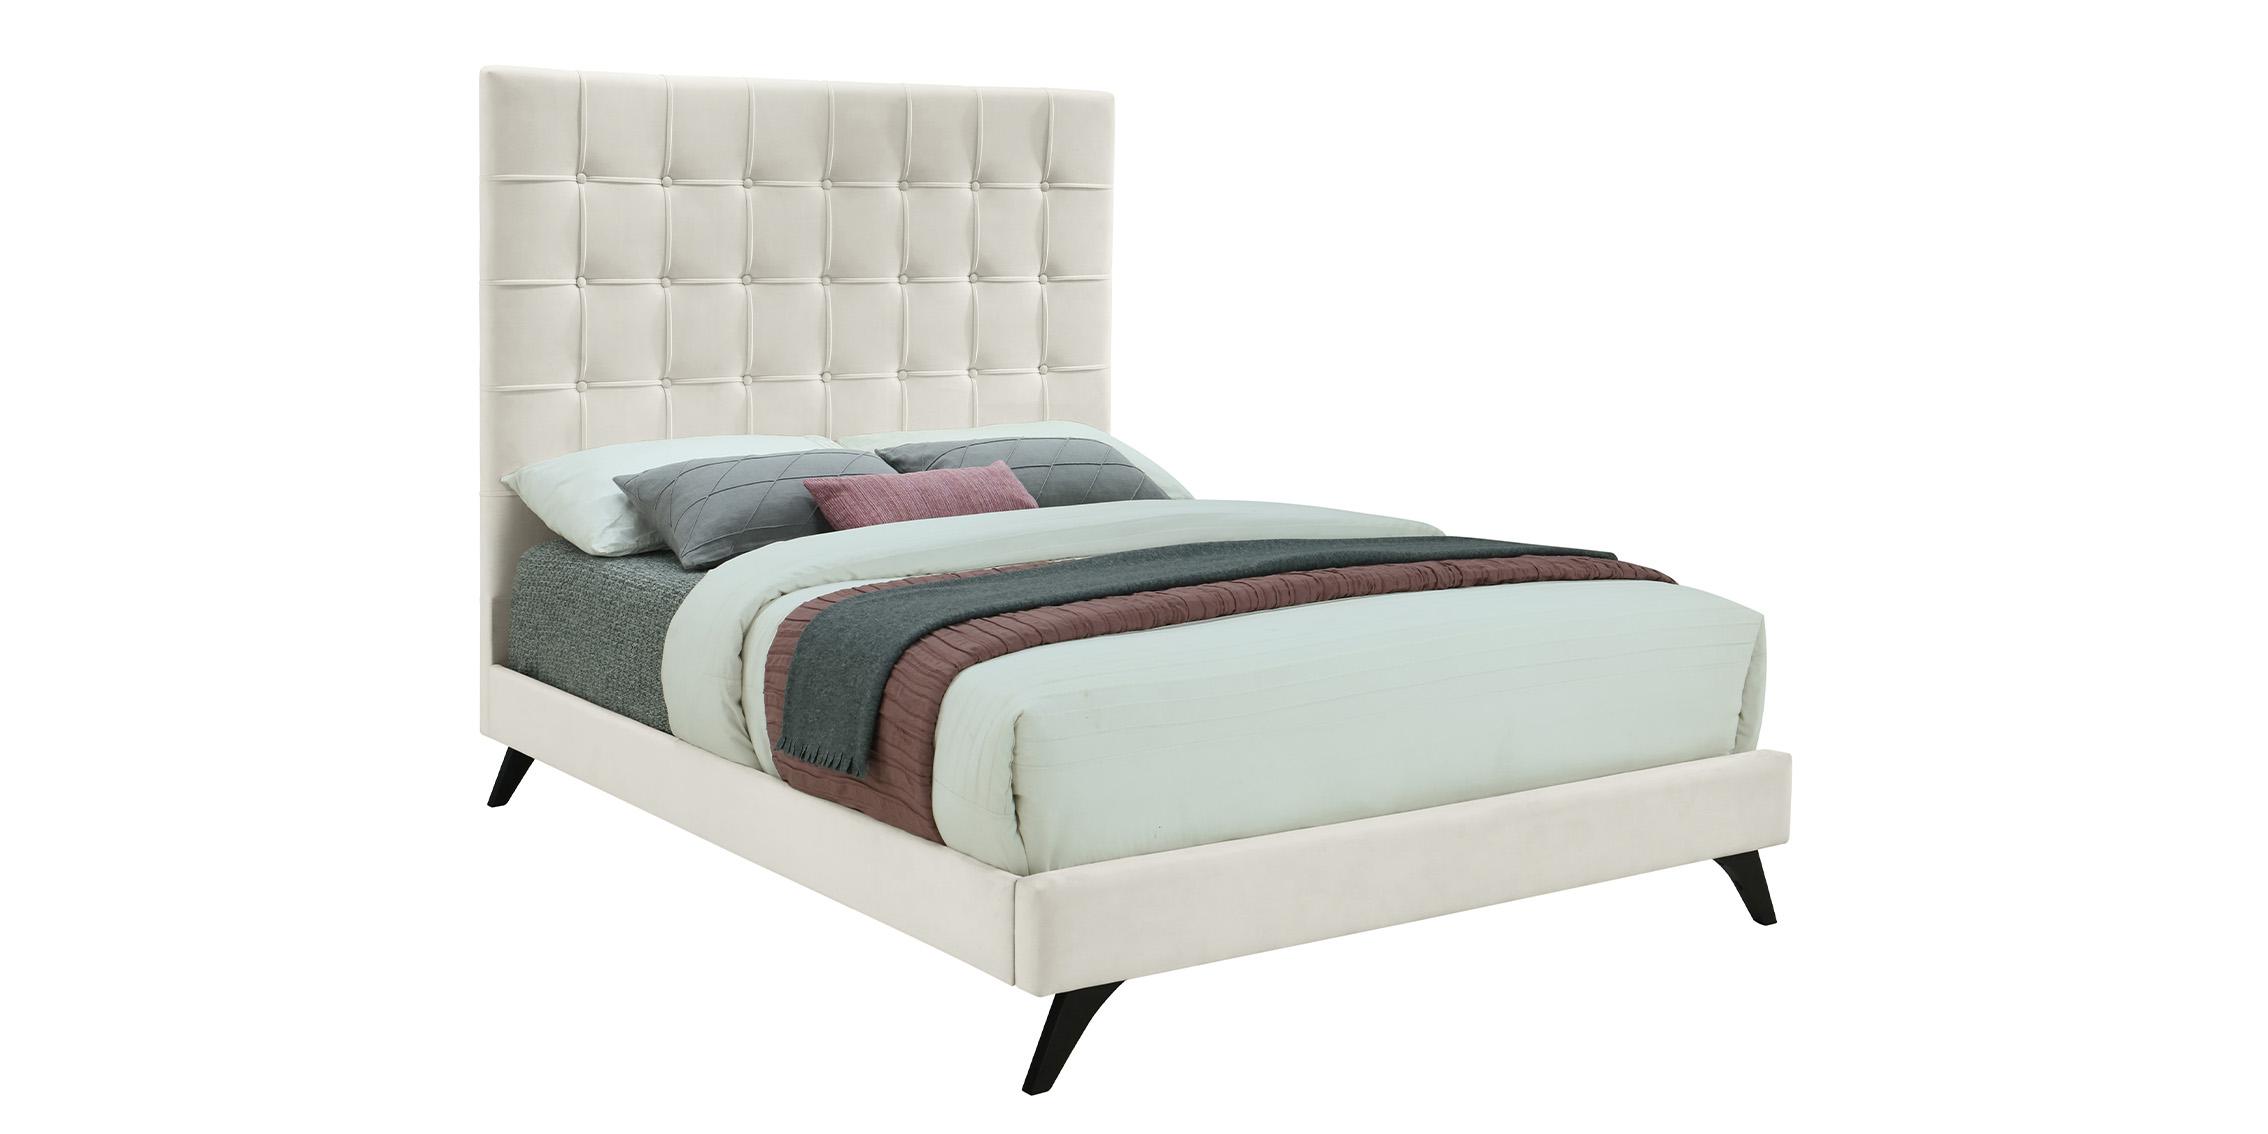 Contemporary, Modern Platform Bed ELLY EllyCream-F EllyCream-F in Cream, Espresso Fabric